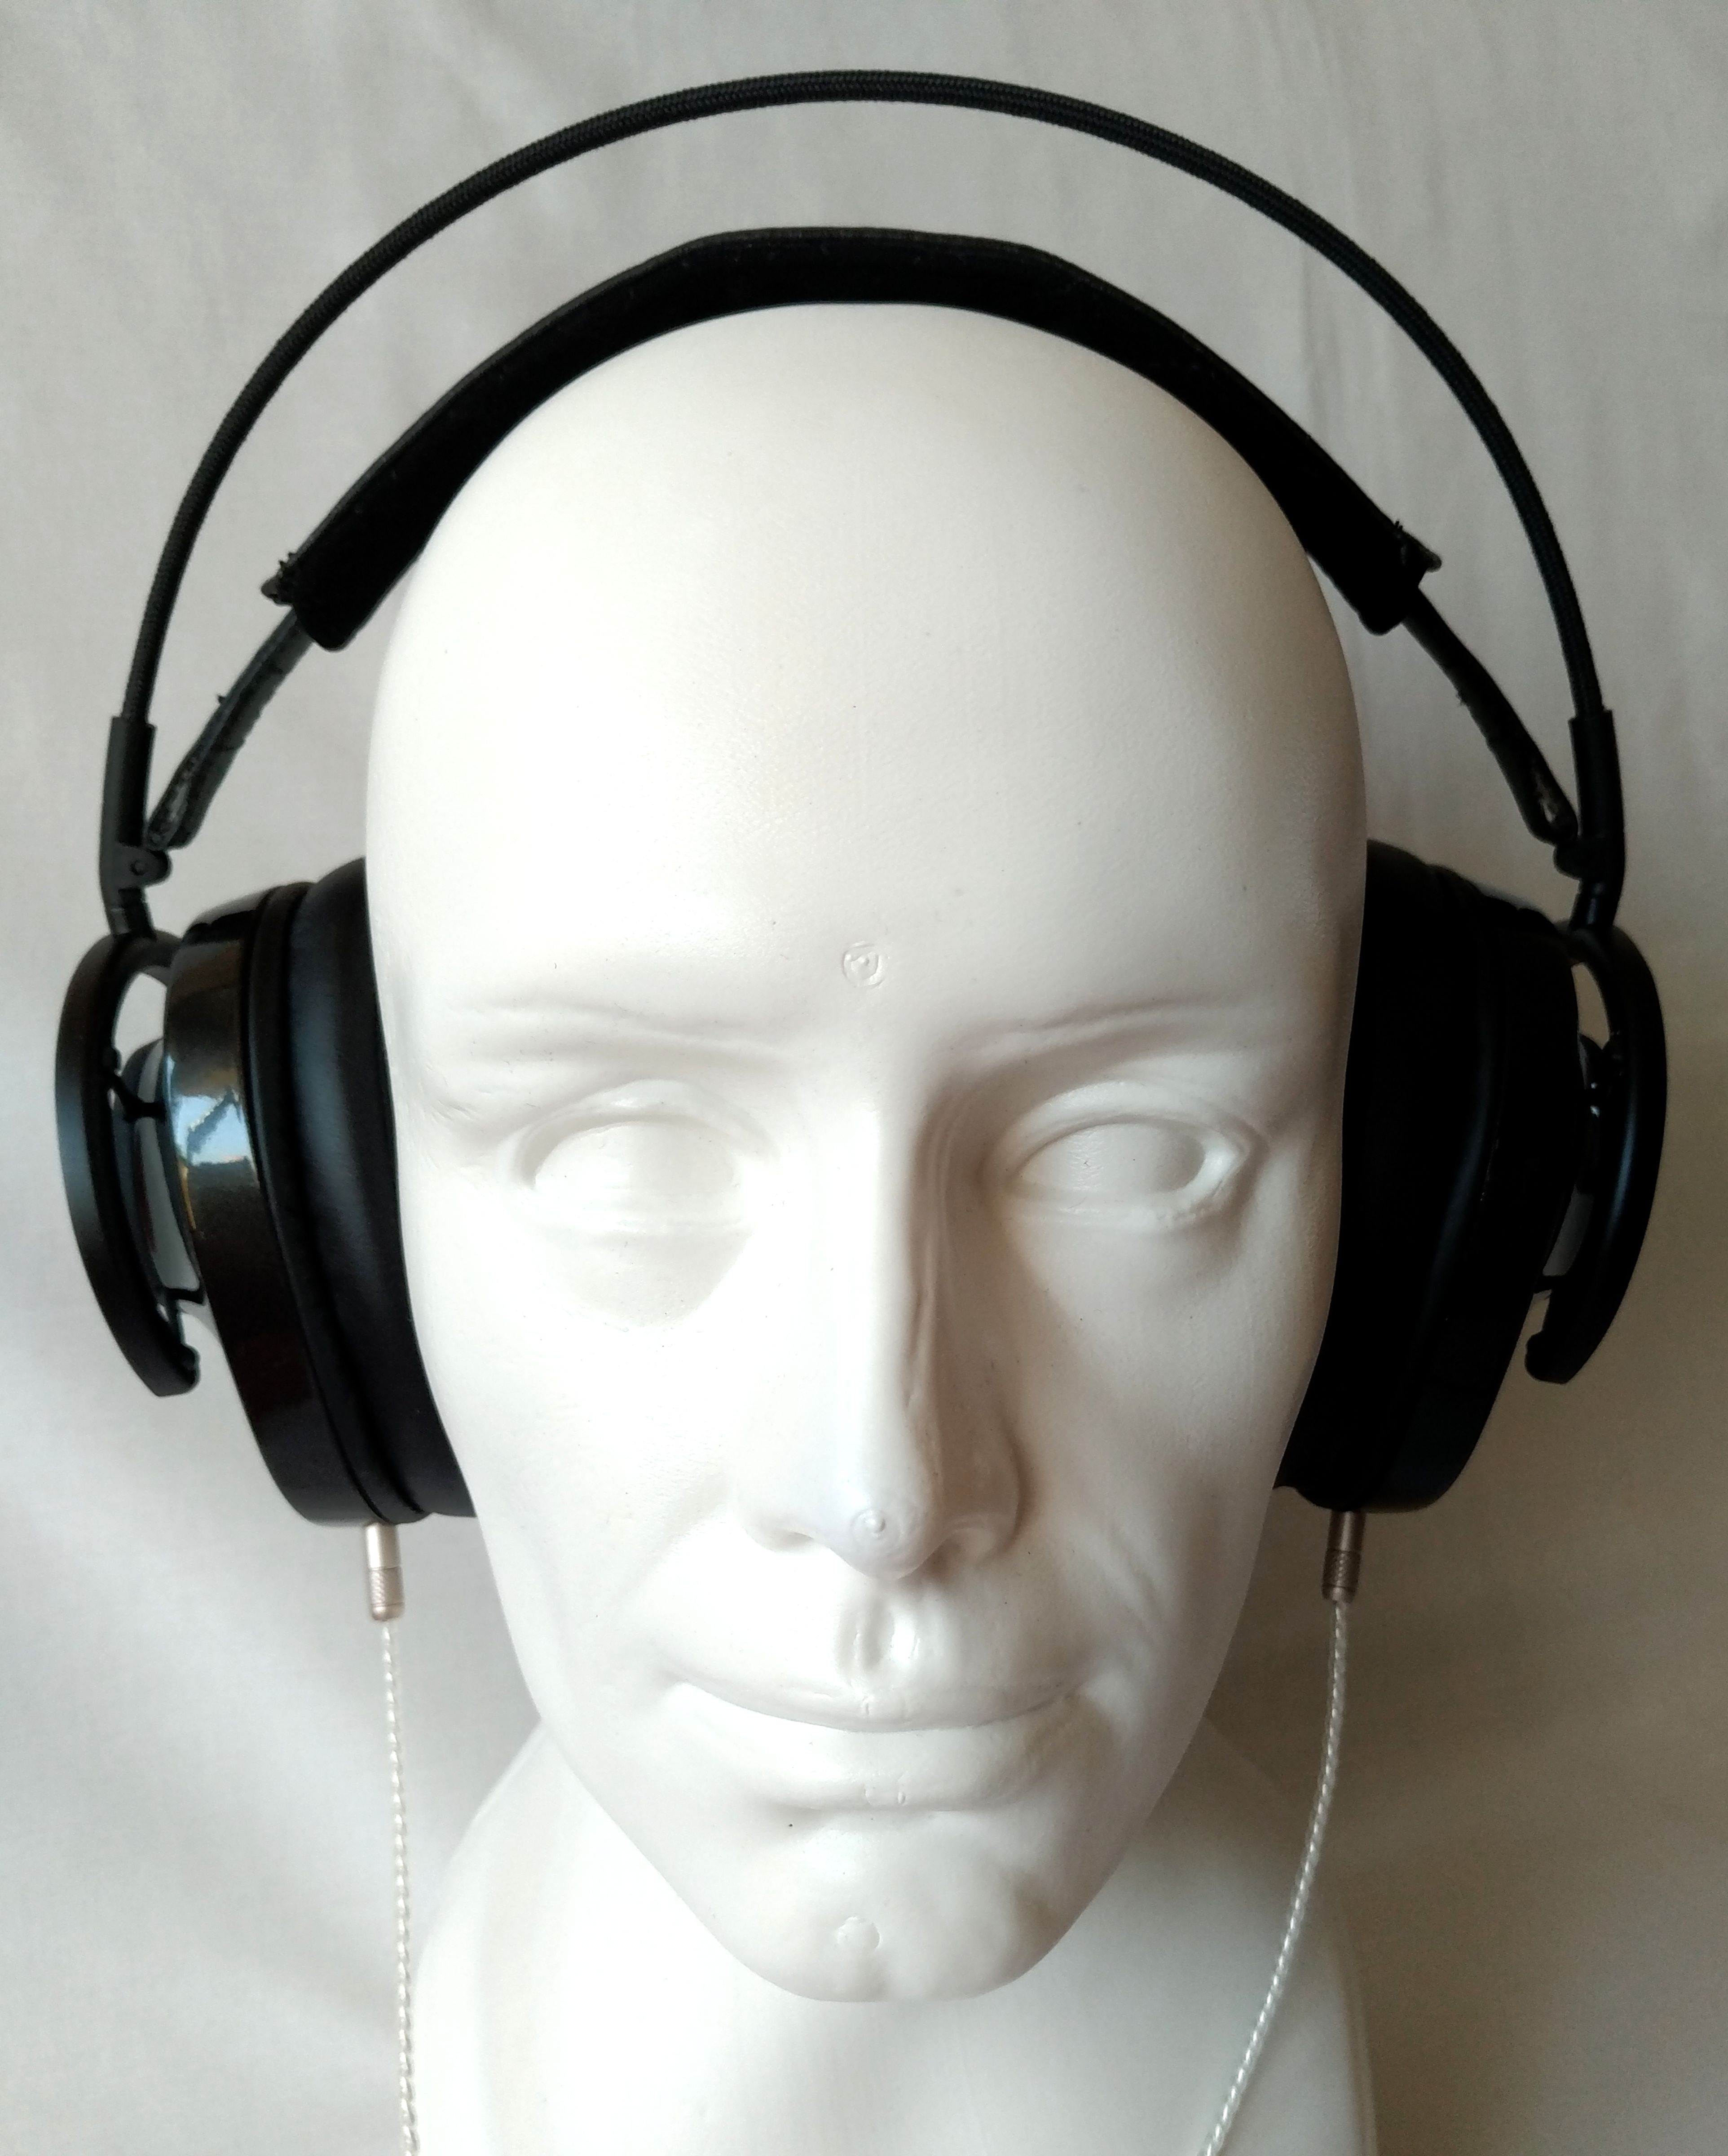 AudioQuest NightHawk Carbon na głowie przodem